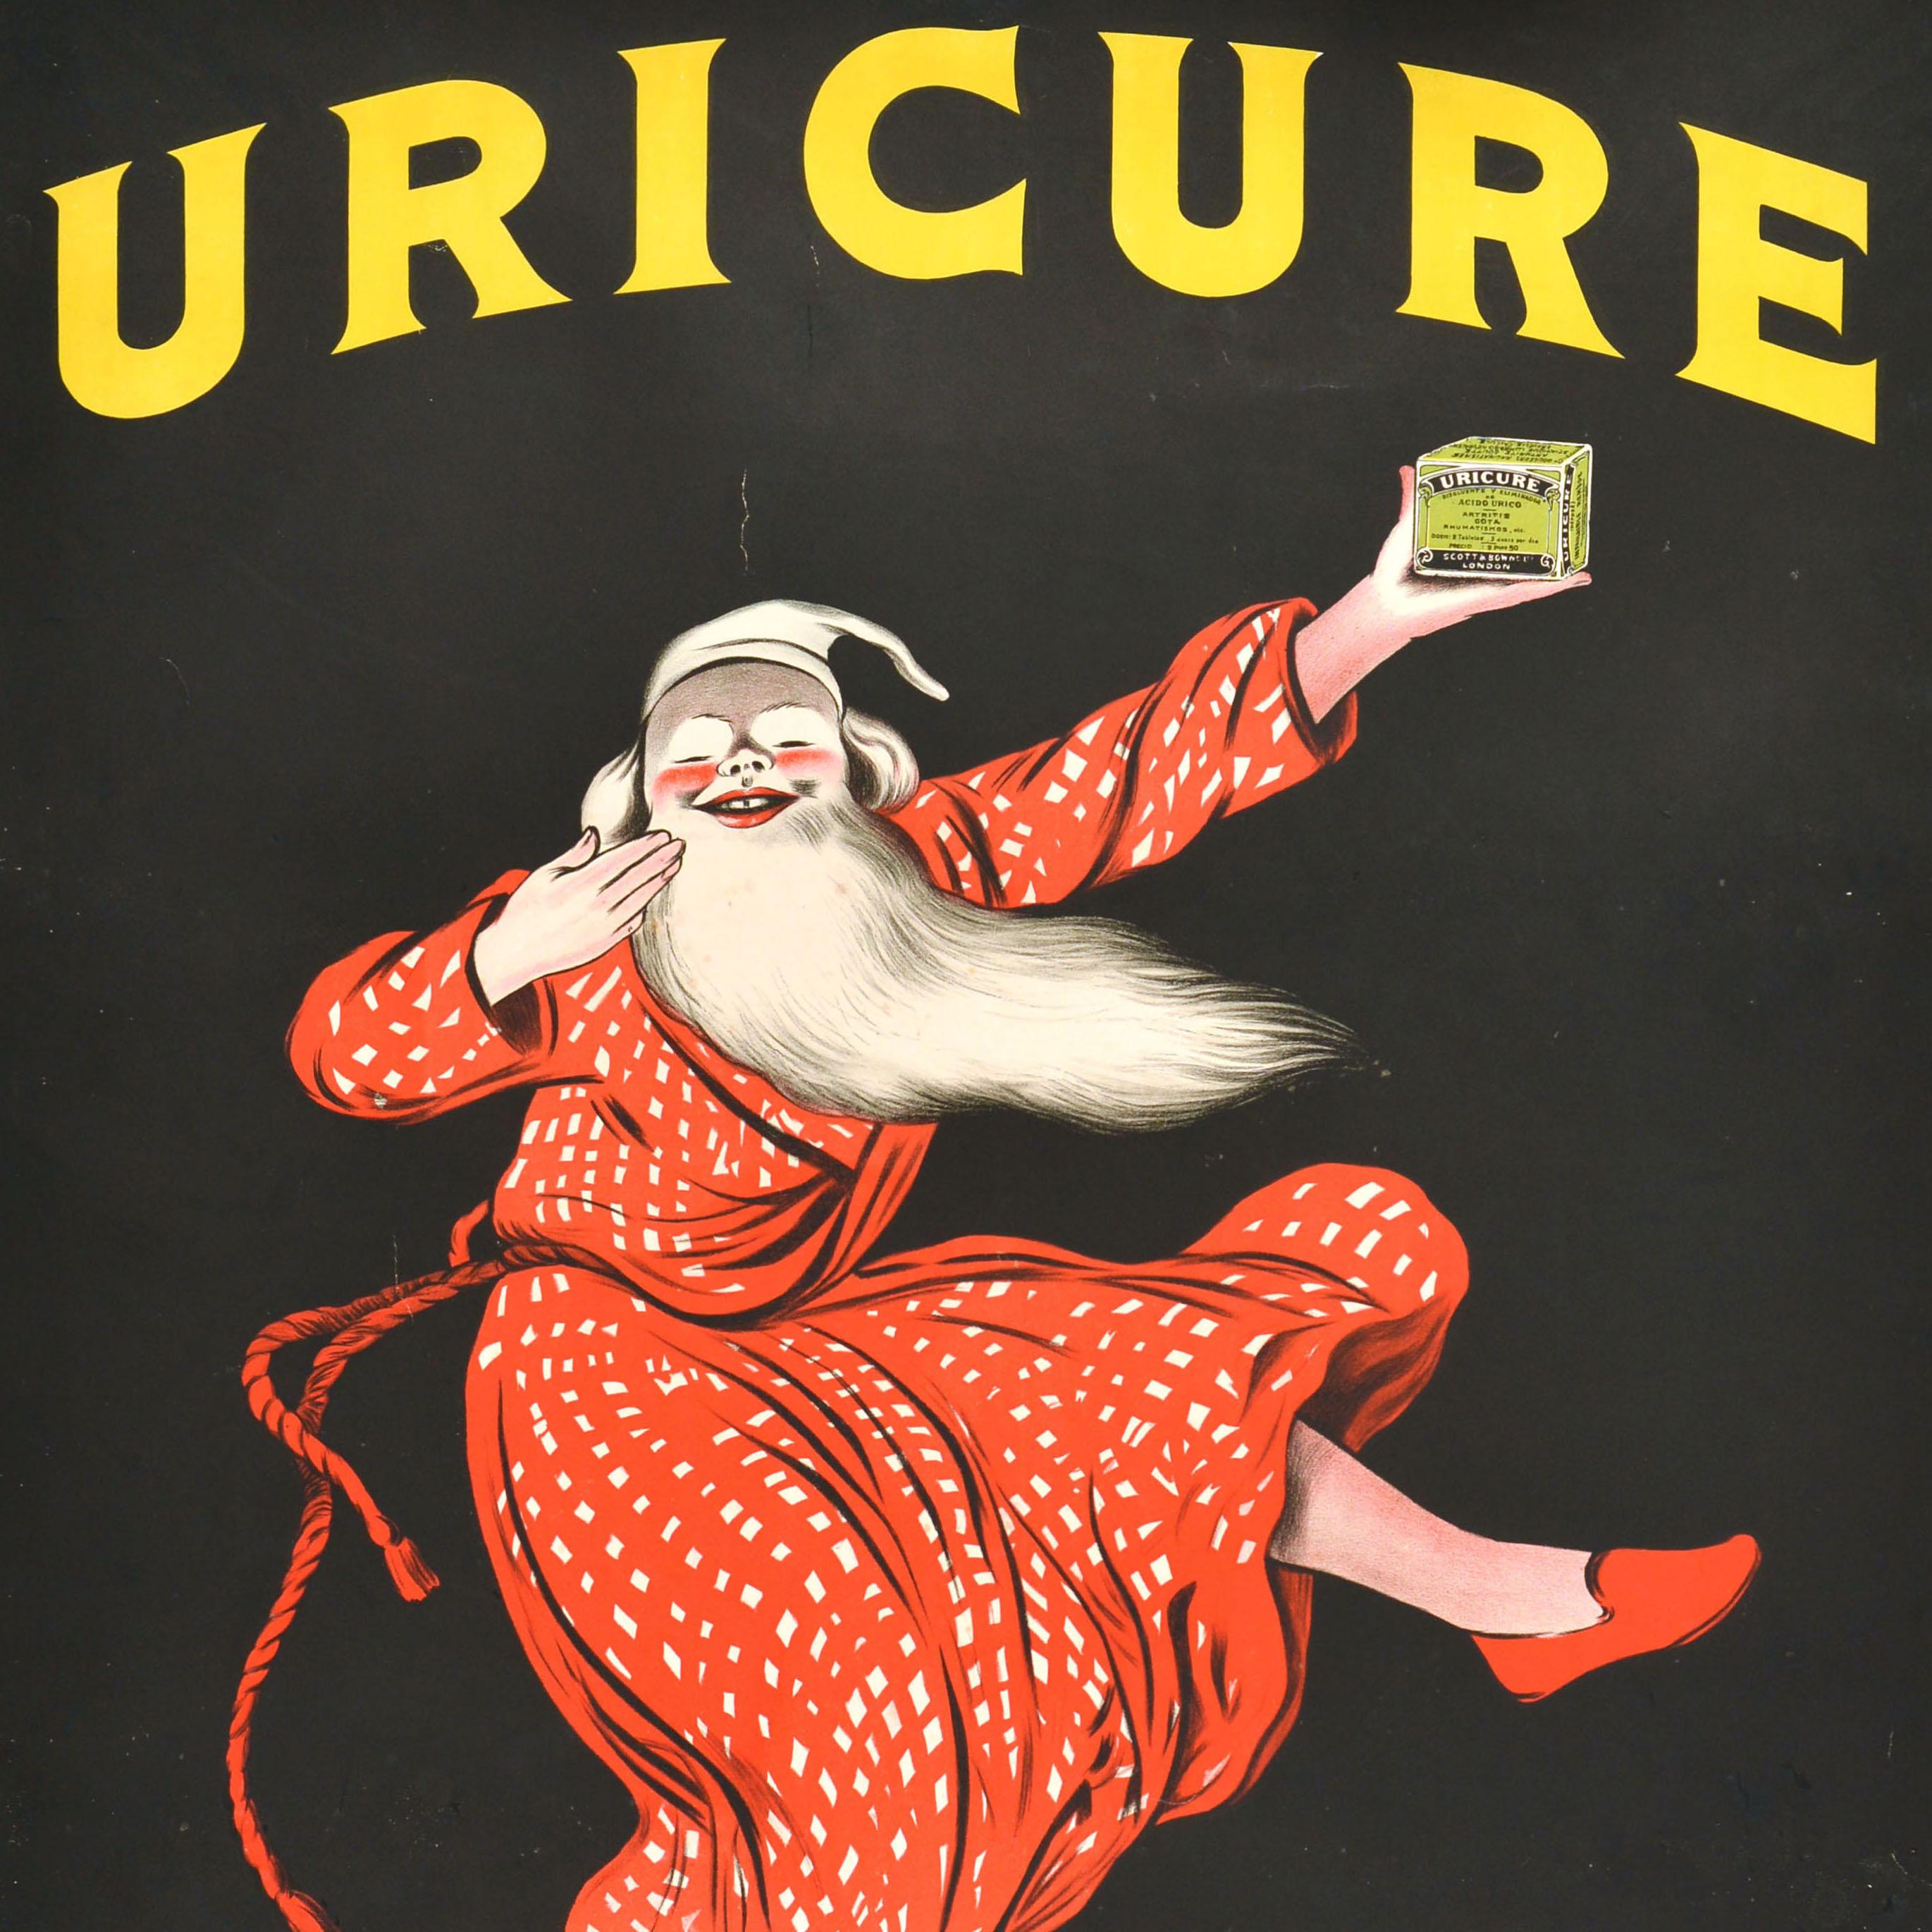 Original Antique Advertising Poster Uricure Medicine Leonetto Cappiello Design For Sale 2